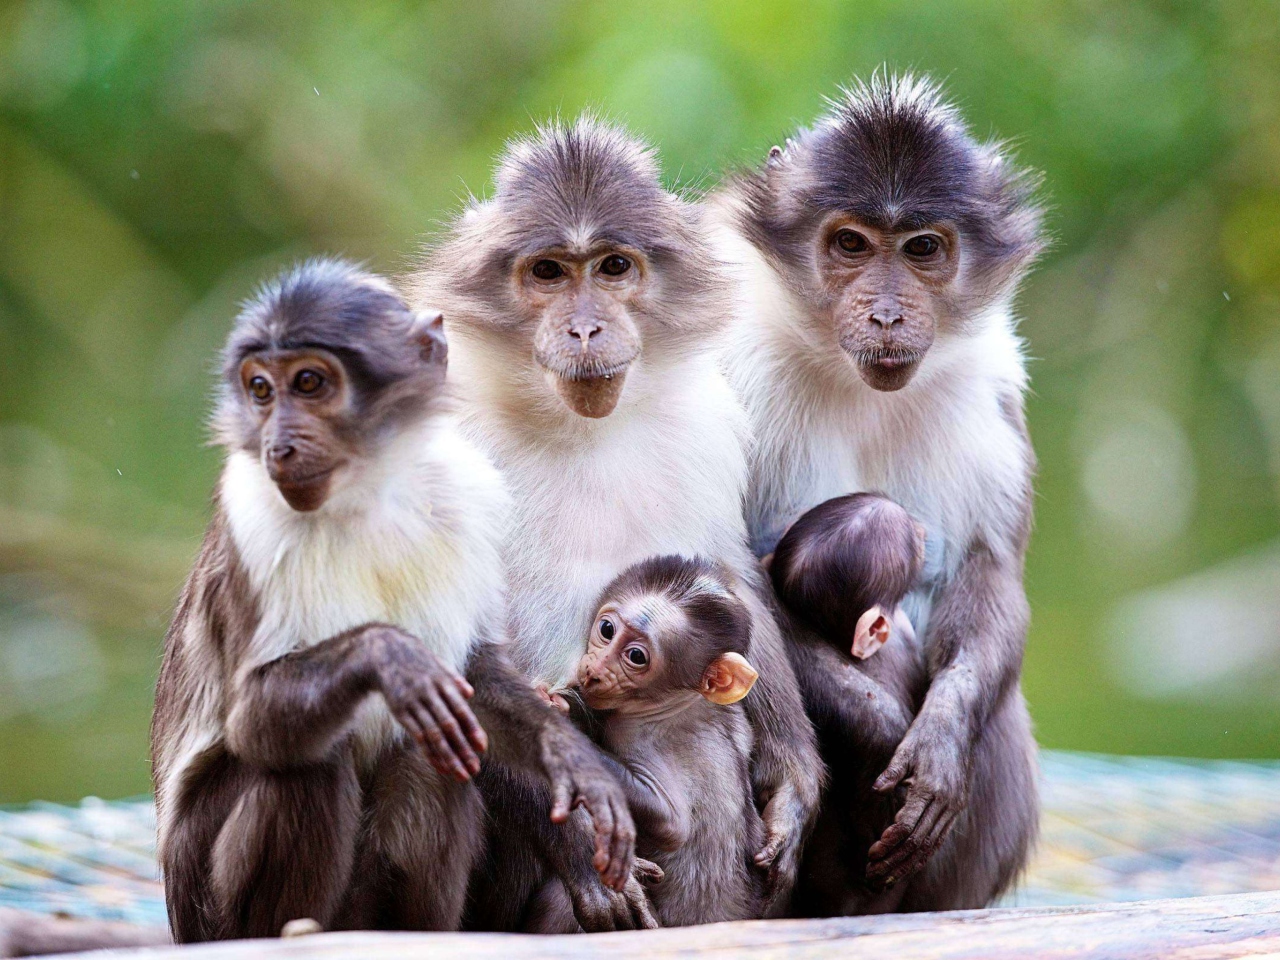 Sfondi Funny Monkeys With Their Babies 1280x960